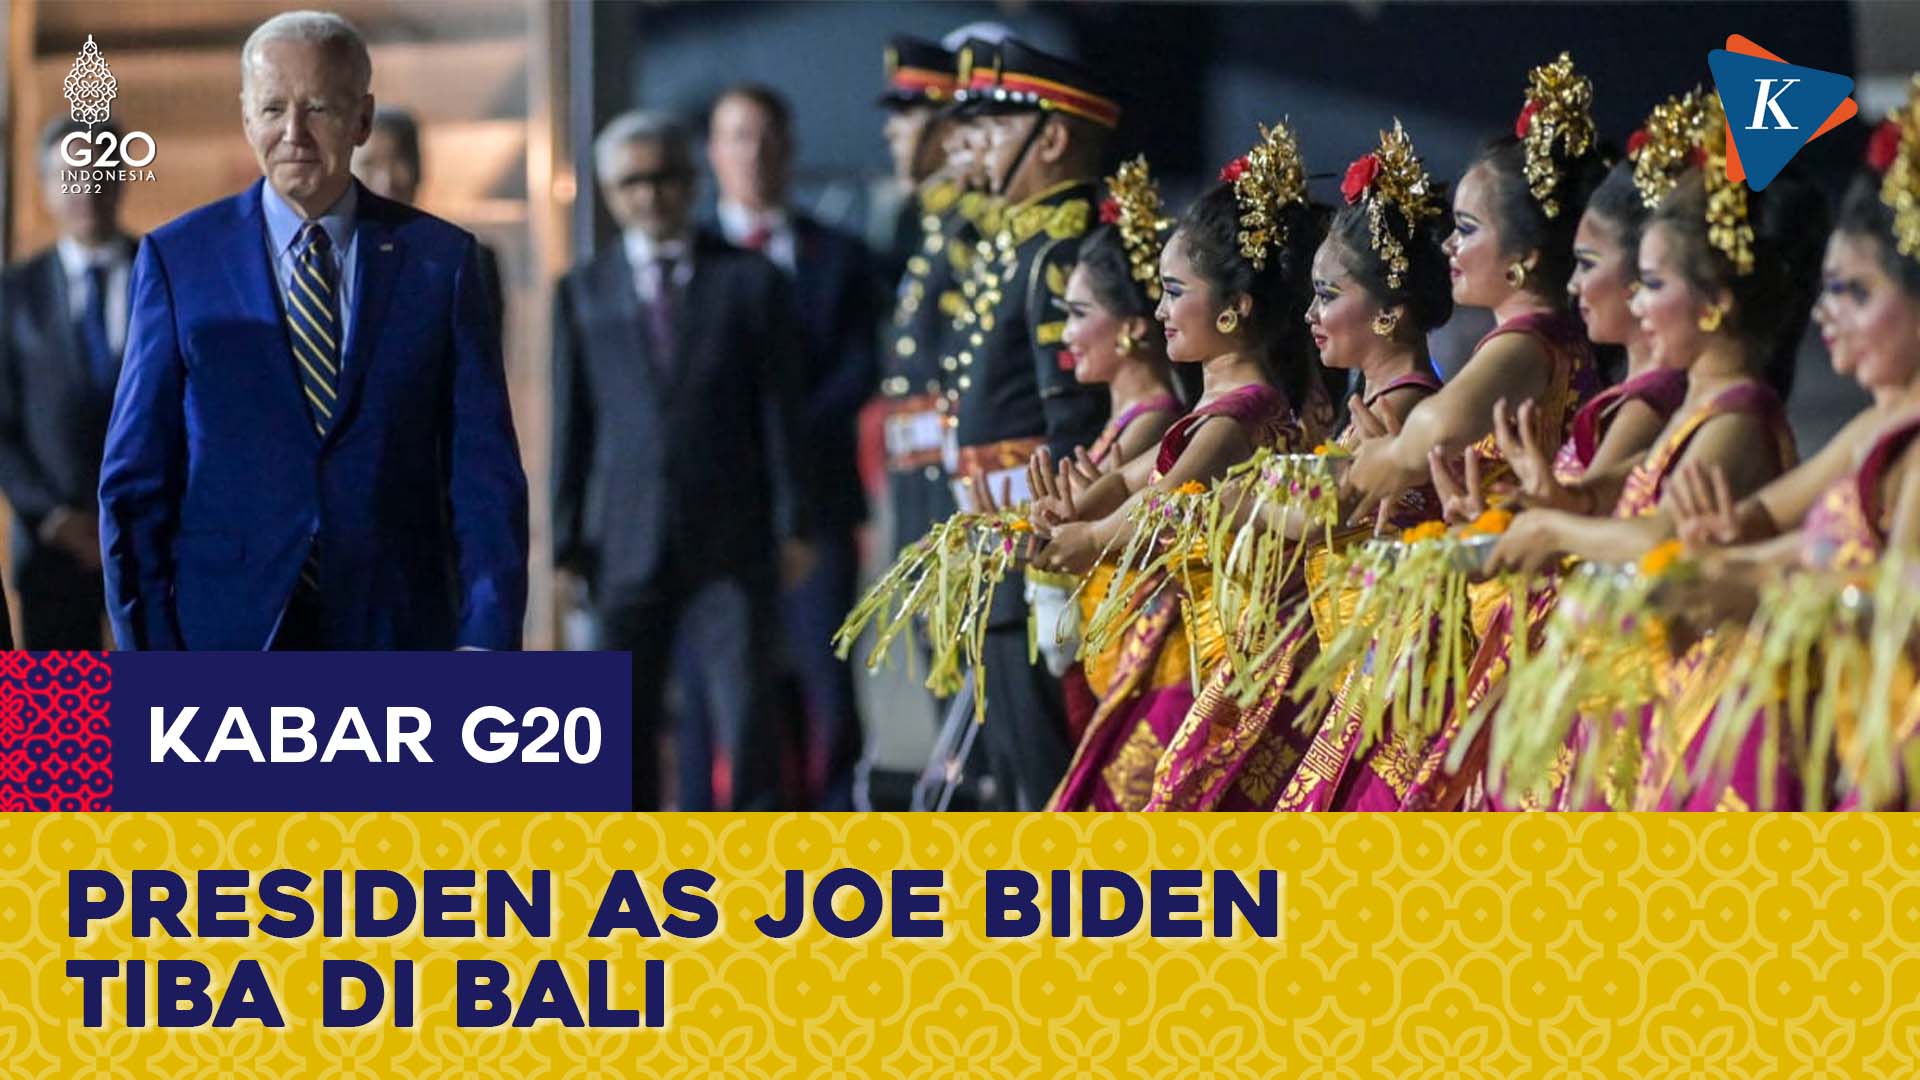 Joe Biden Tiba di Bali, Dikawal Ketat hingga Jalan Raya Disterilkan